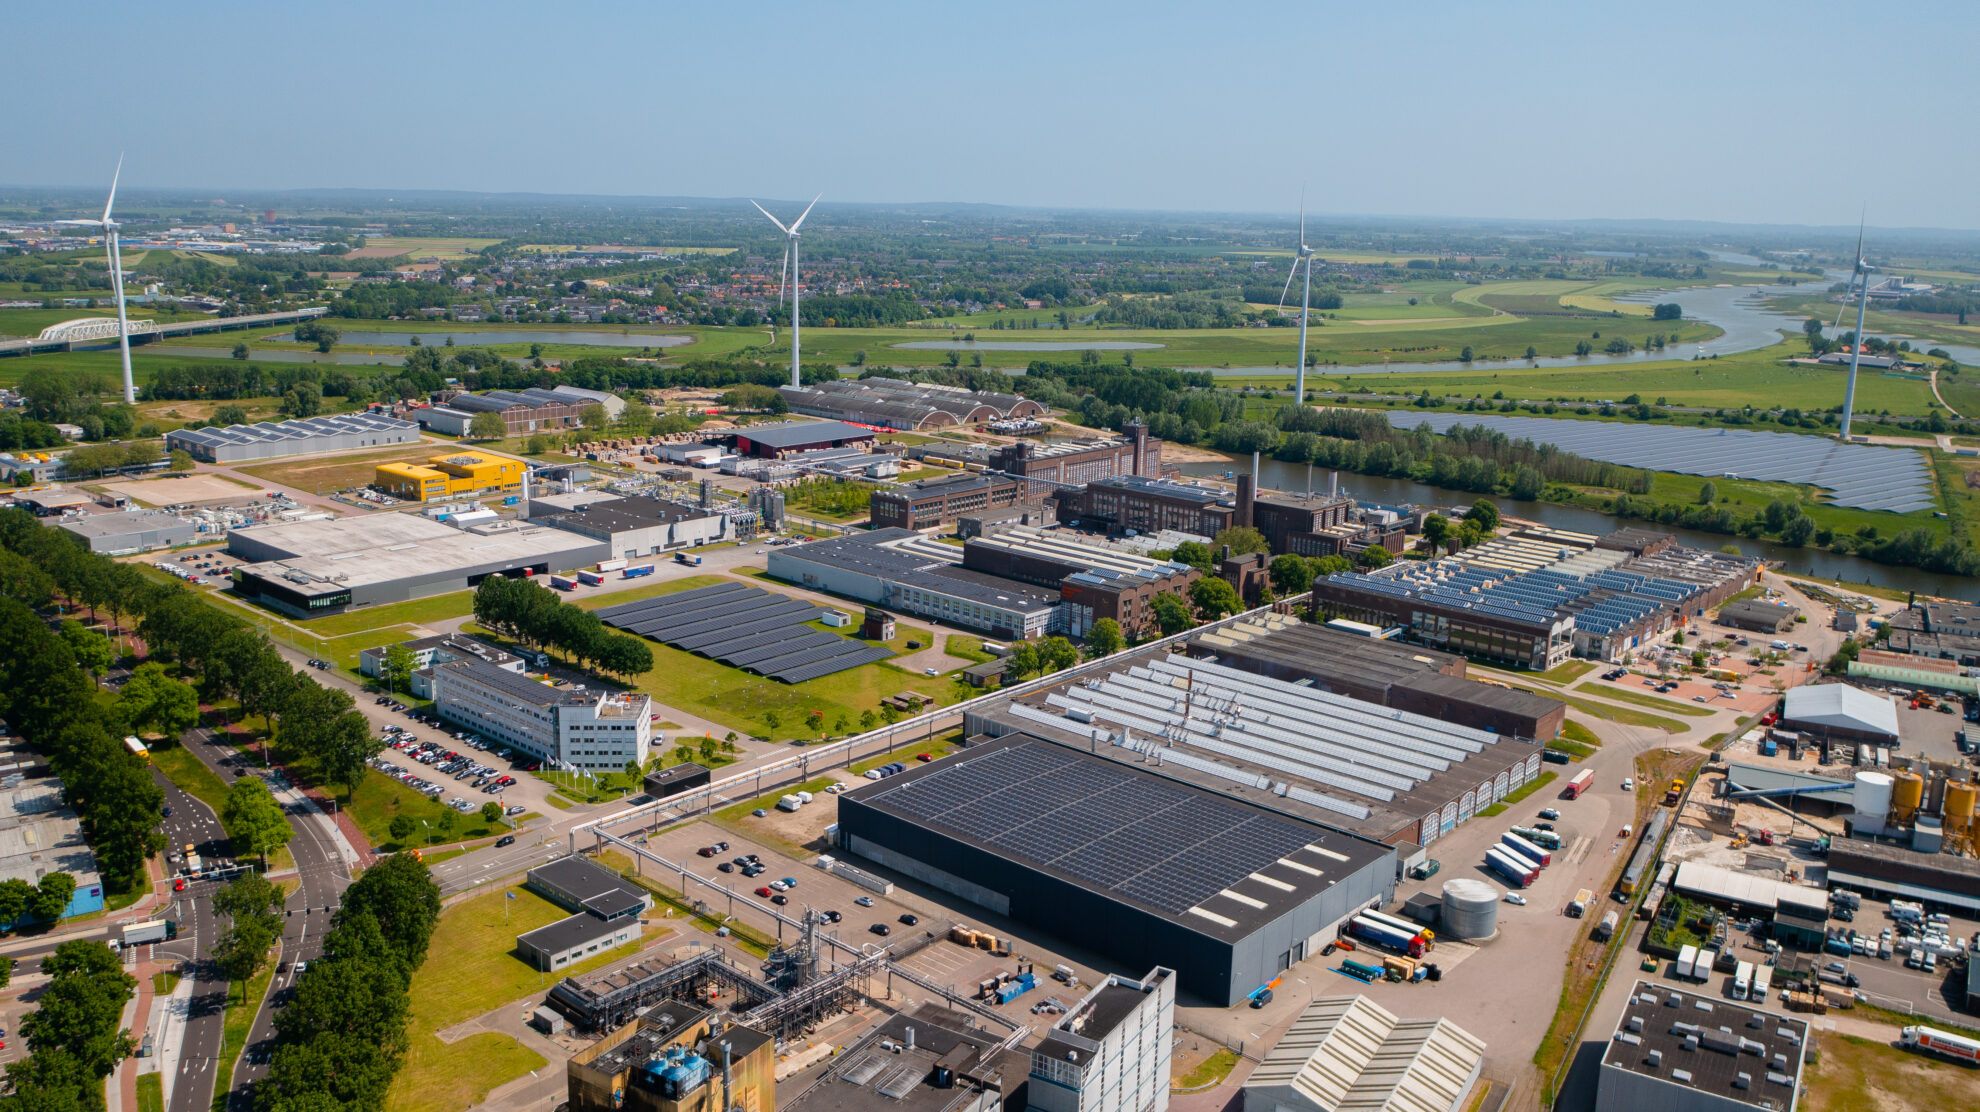 Torenhoge ambities: Kleefse Waard wil meest duurzame bedrijventerrein van Nederland worden